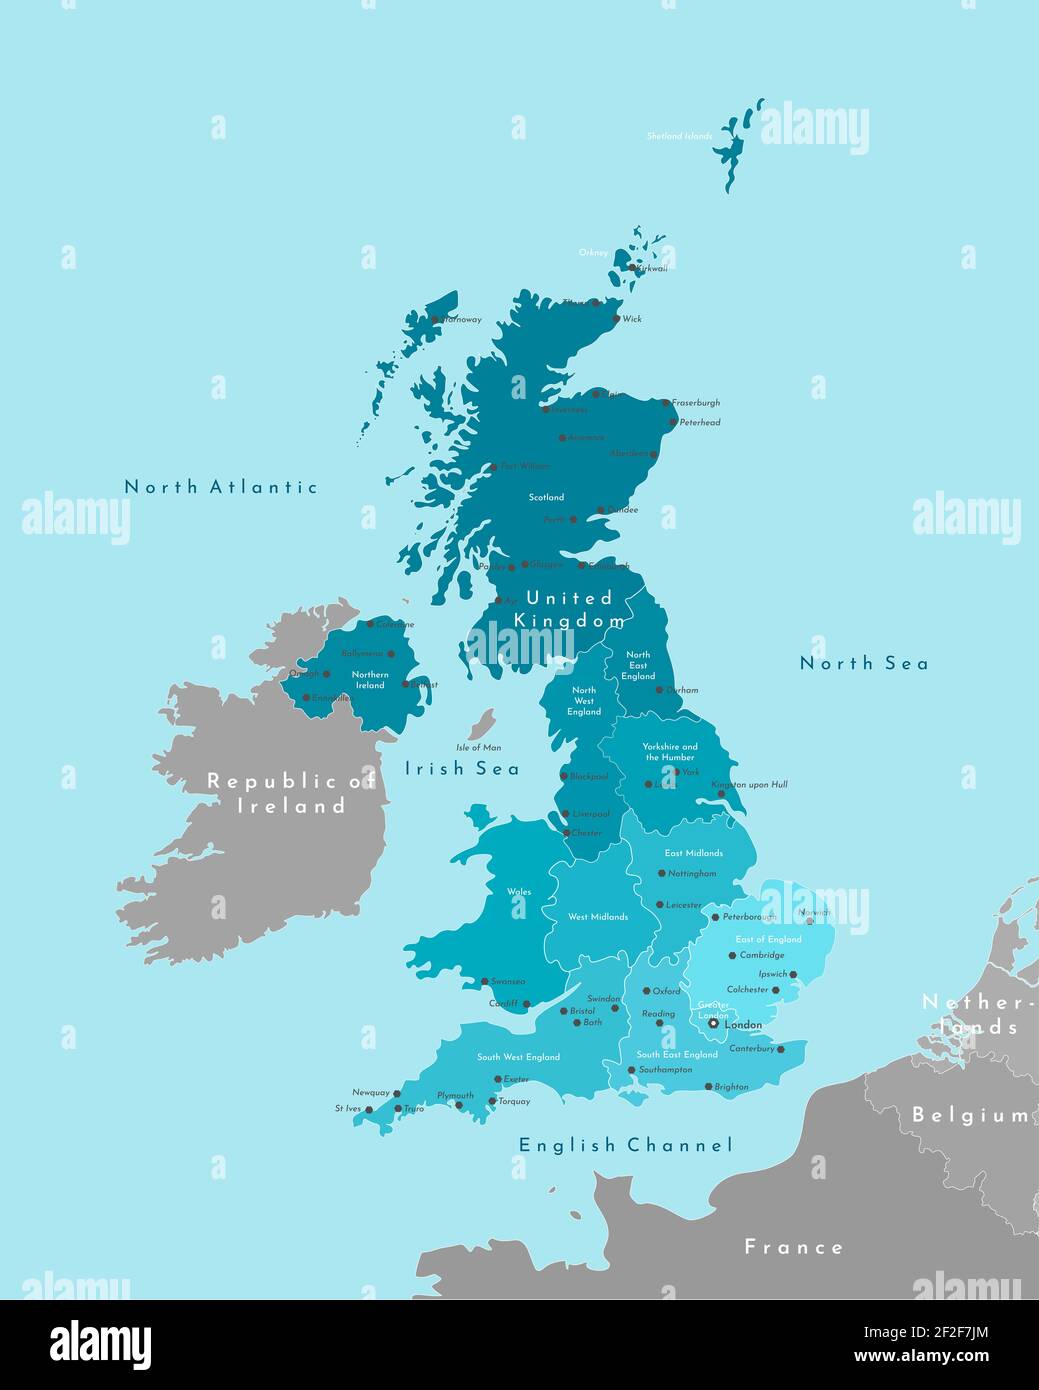 Illustrazione moderna vettoriale. Mappa geografica semplificata del Regno Unito di Gran Bretagna e Irlanda del Nord (Regno Unito). Sfondo blu del mare irlandese Foto Stock